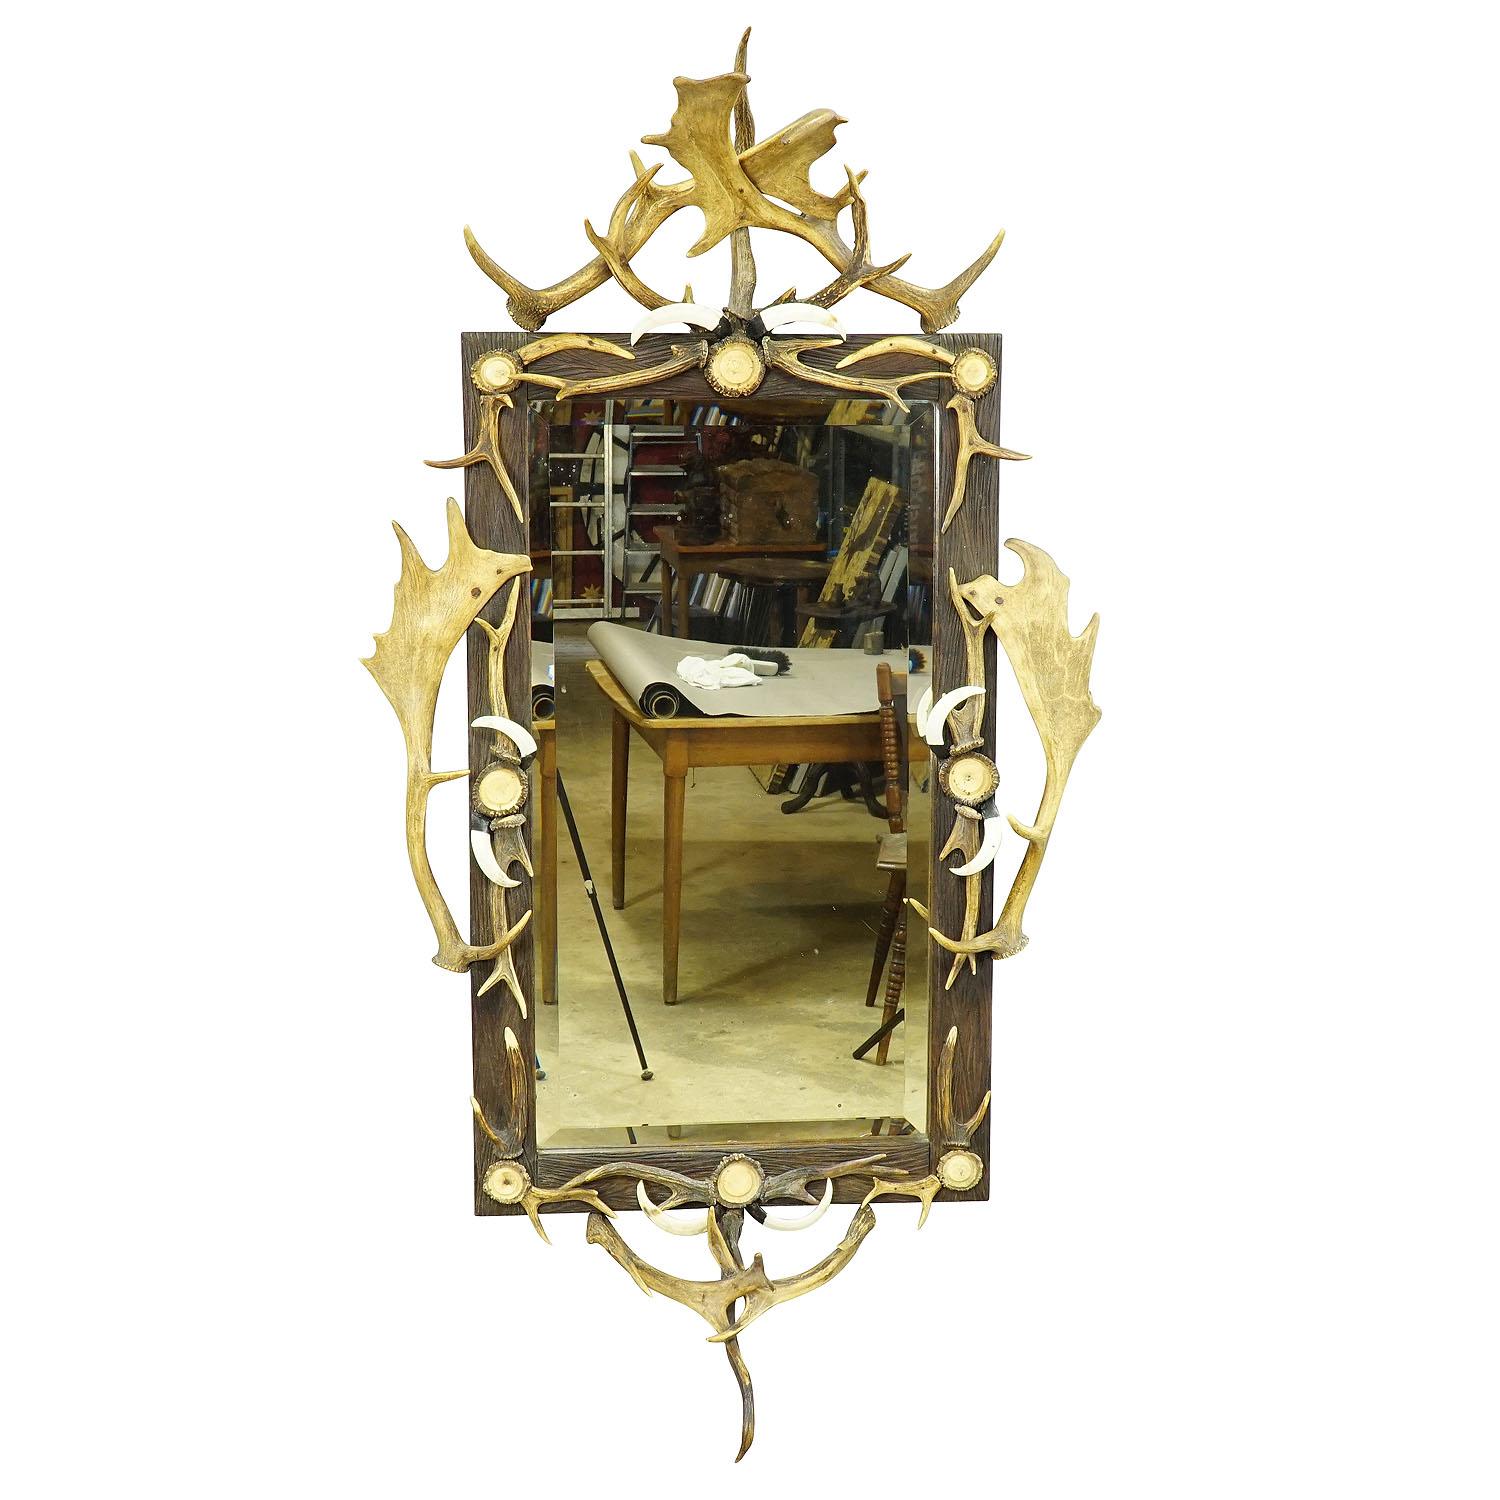 Grand Antique Mirror avec décorations en bois de cerf rustiques

Un grand miroir impressionnant en bois décoré de roses en corne tournée et de morceaux de bois de cerf, de daim et de cerf de virginie. Fabriqué en Allemagne, dans la Forêt-Noire, vers